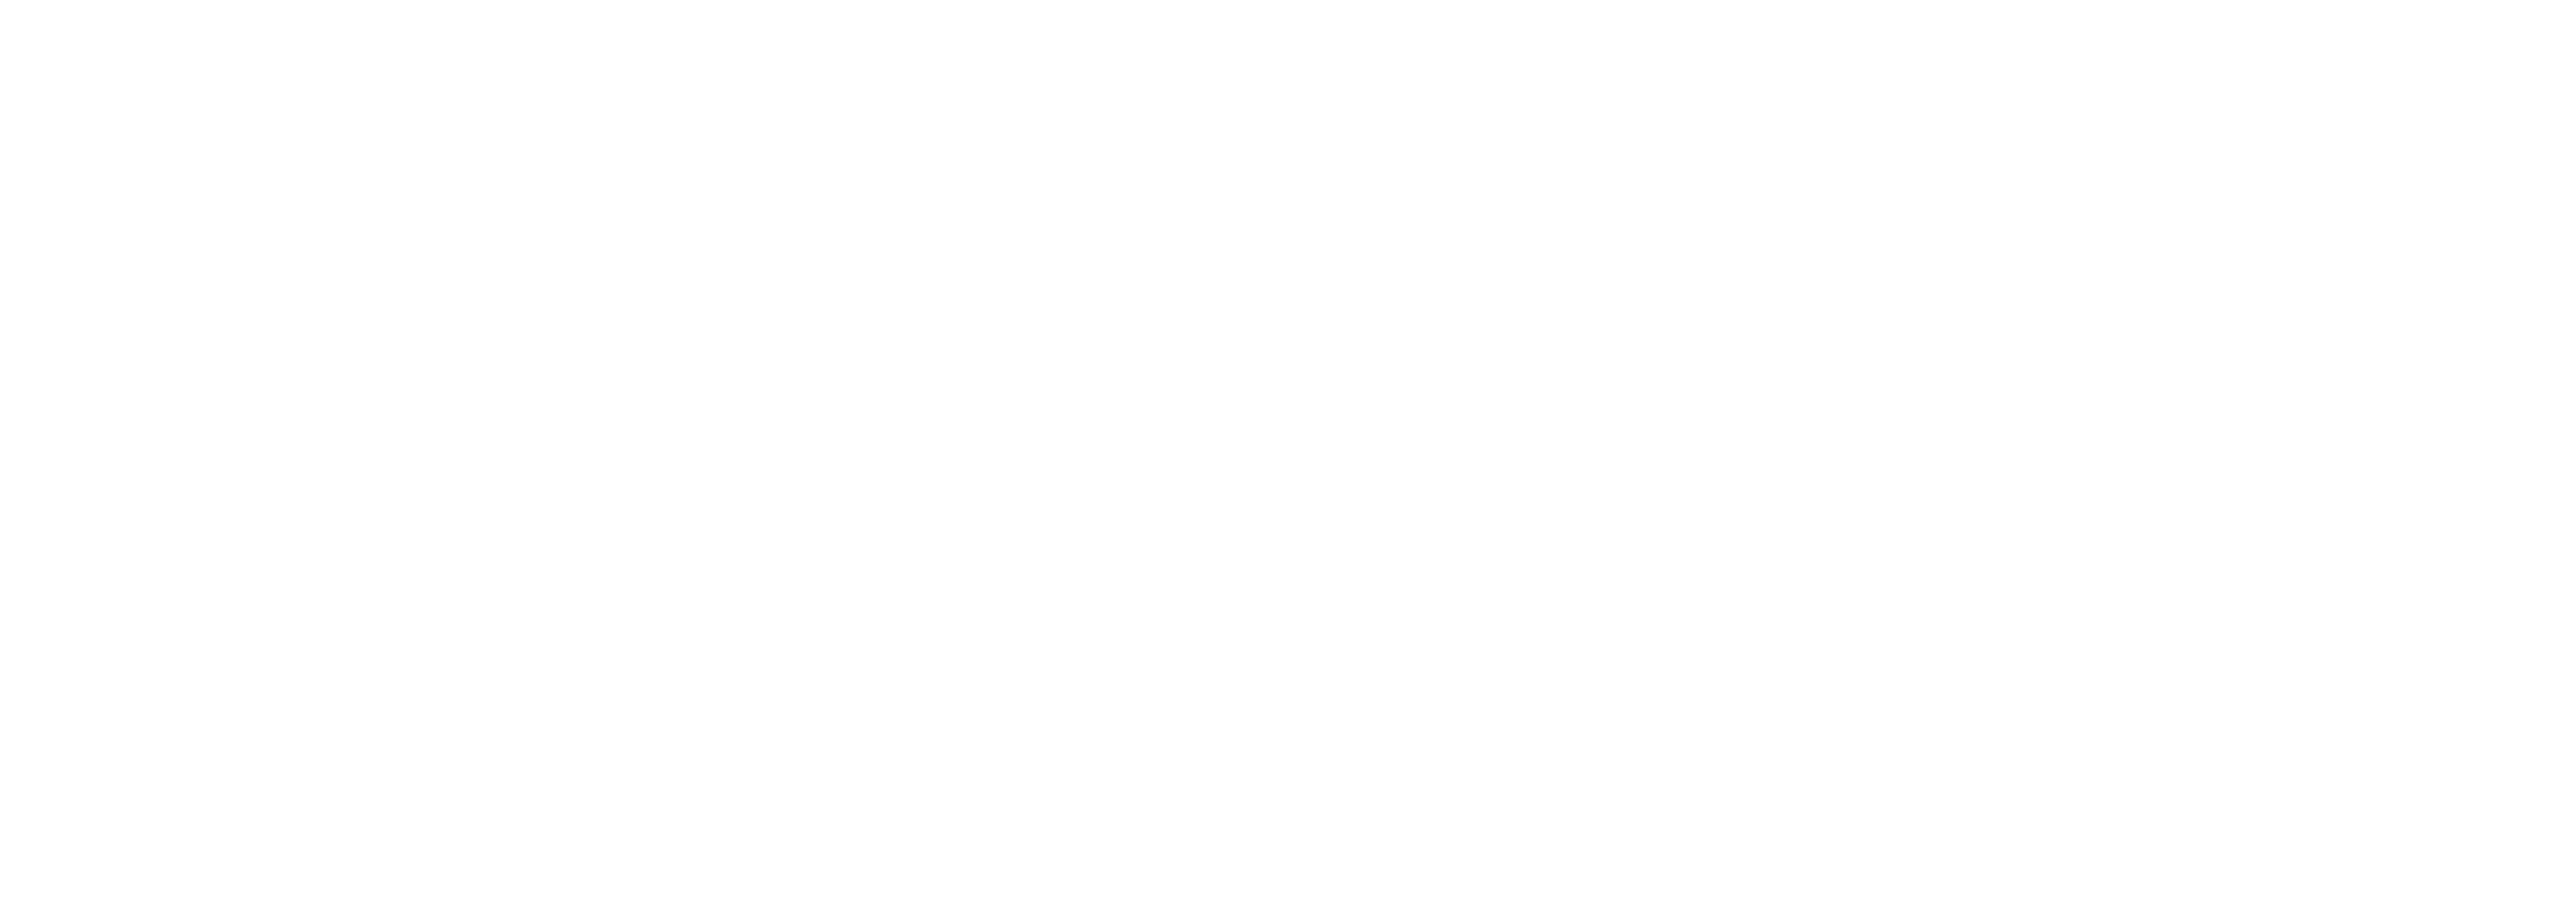 ProMo Cymru : Make it happen together